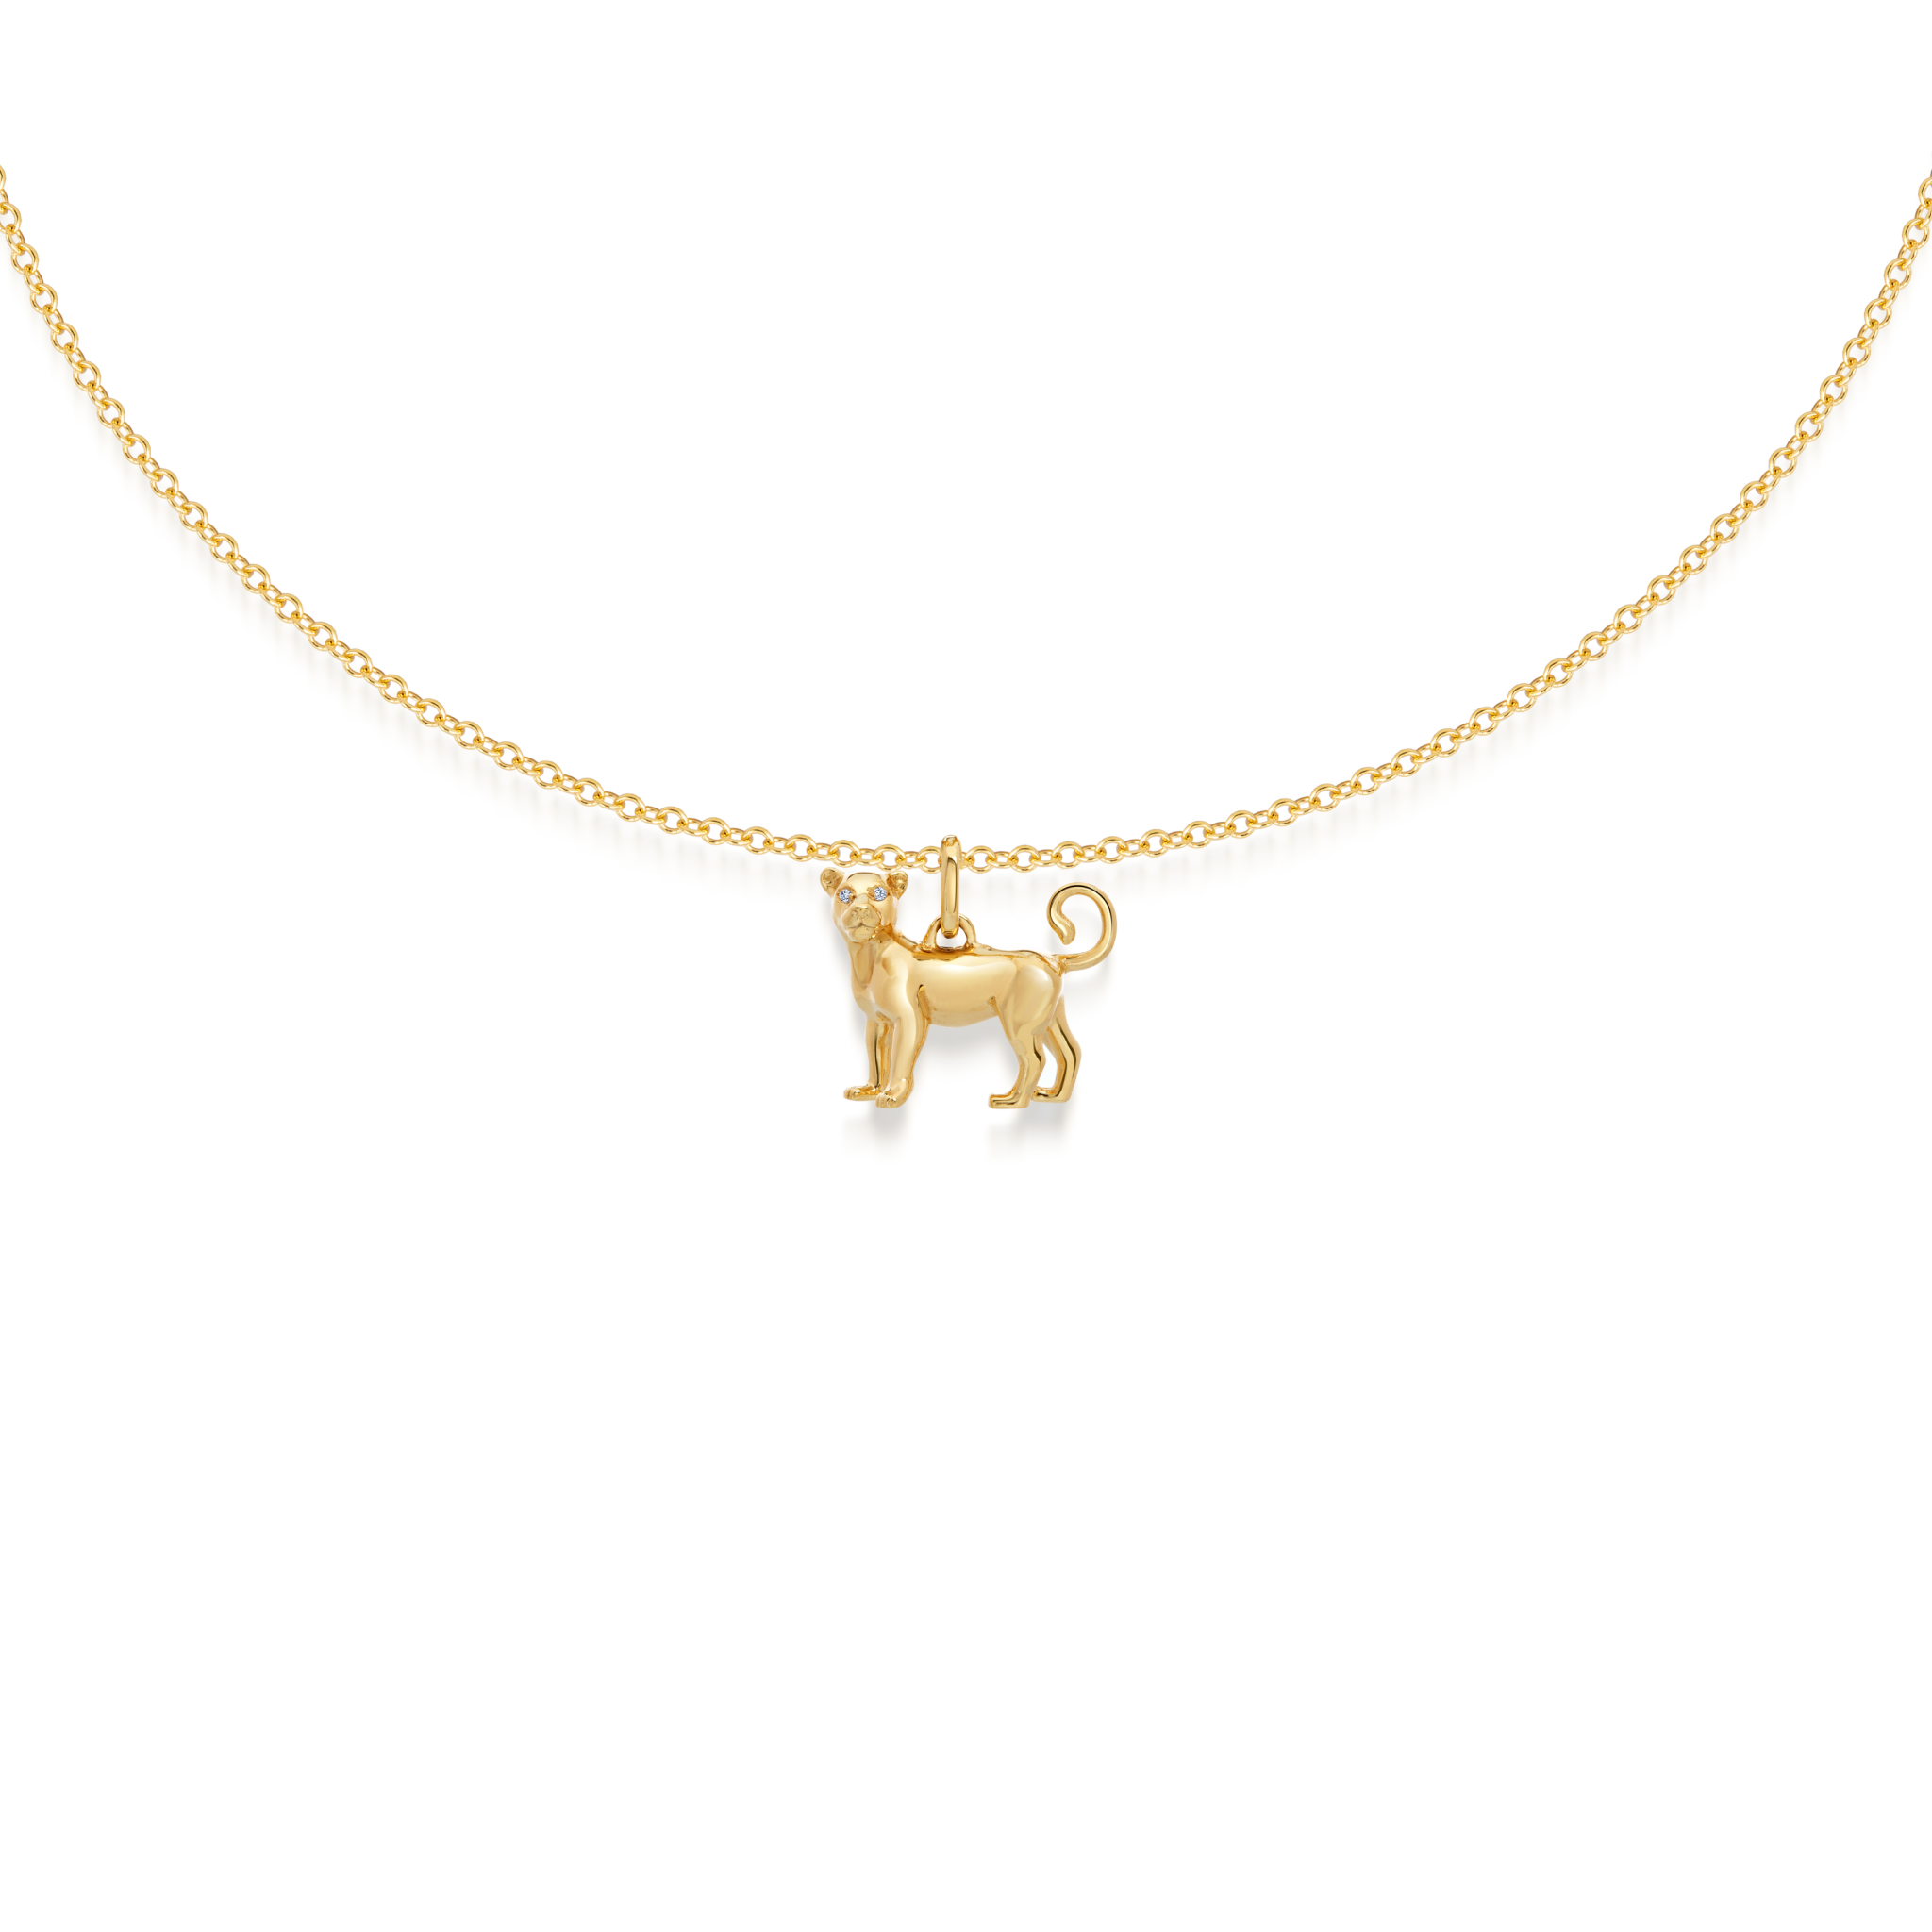 Lionne necklace